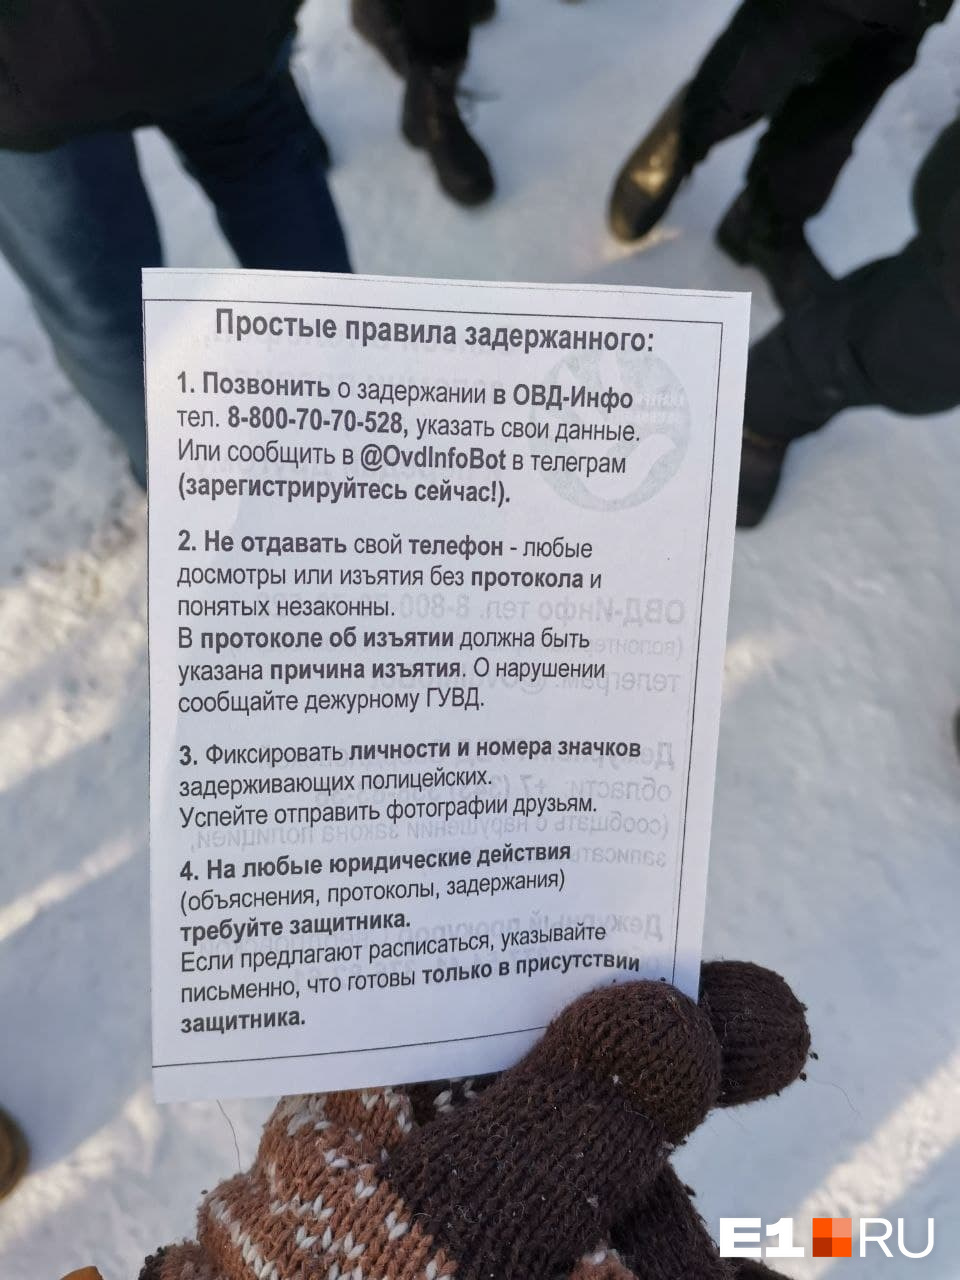 В начале акции протеста Анна Пастухова раздала участникам такие памятки. Возможно, некоторым они пригодились — полиция отчиталась о 14 задержанных